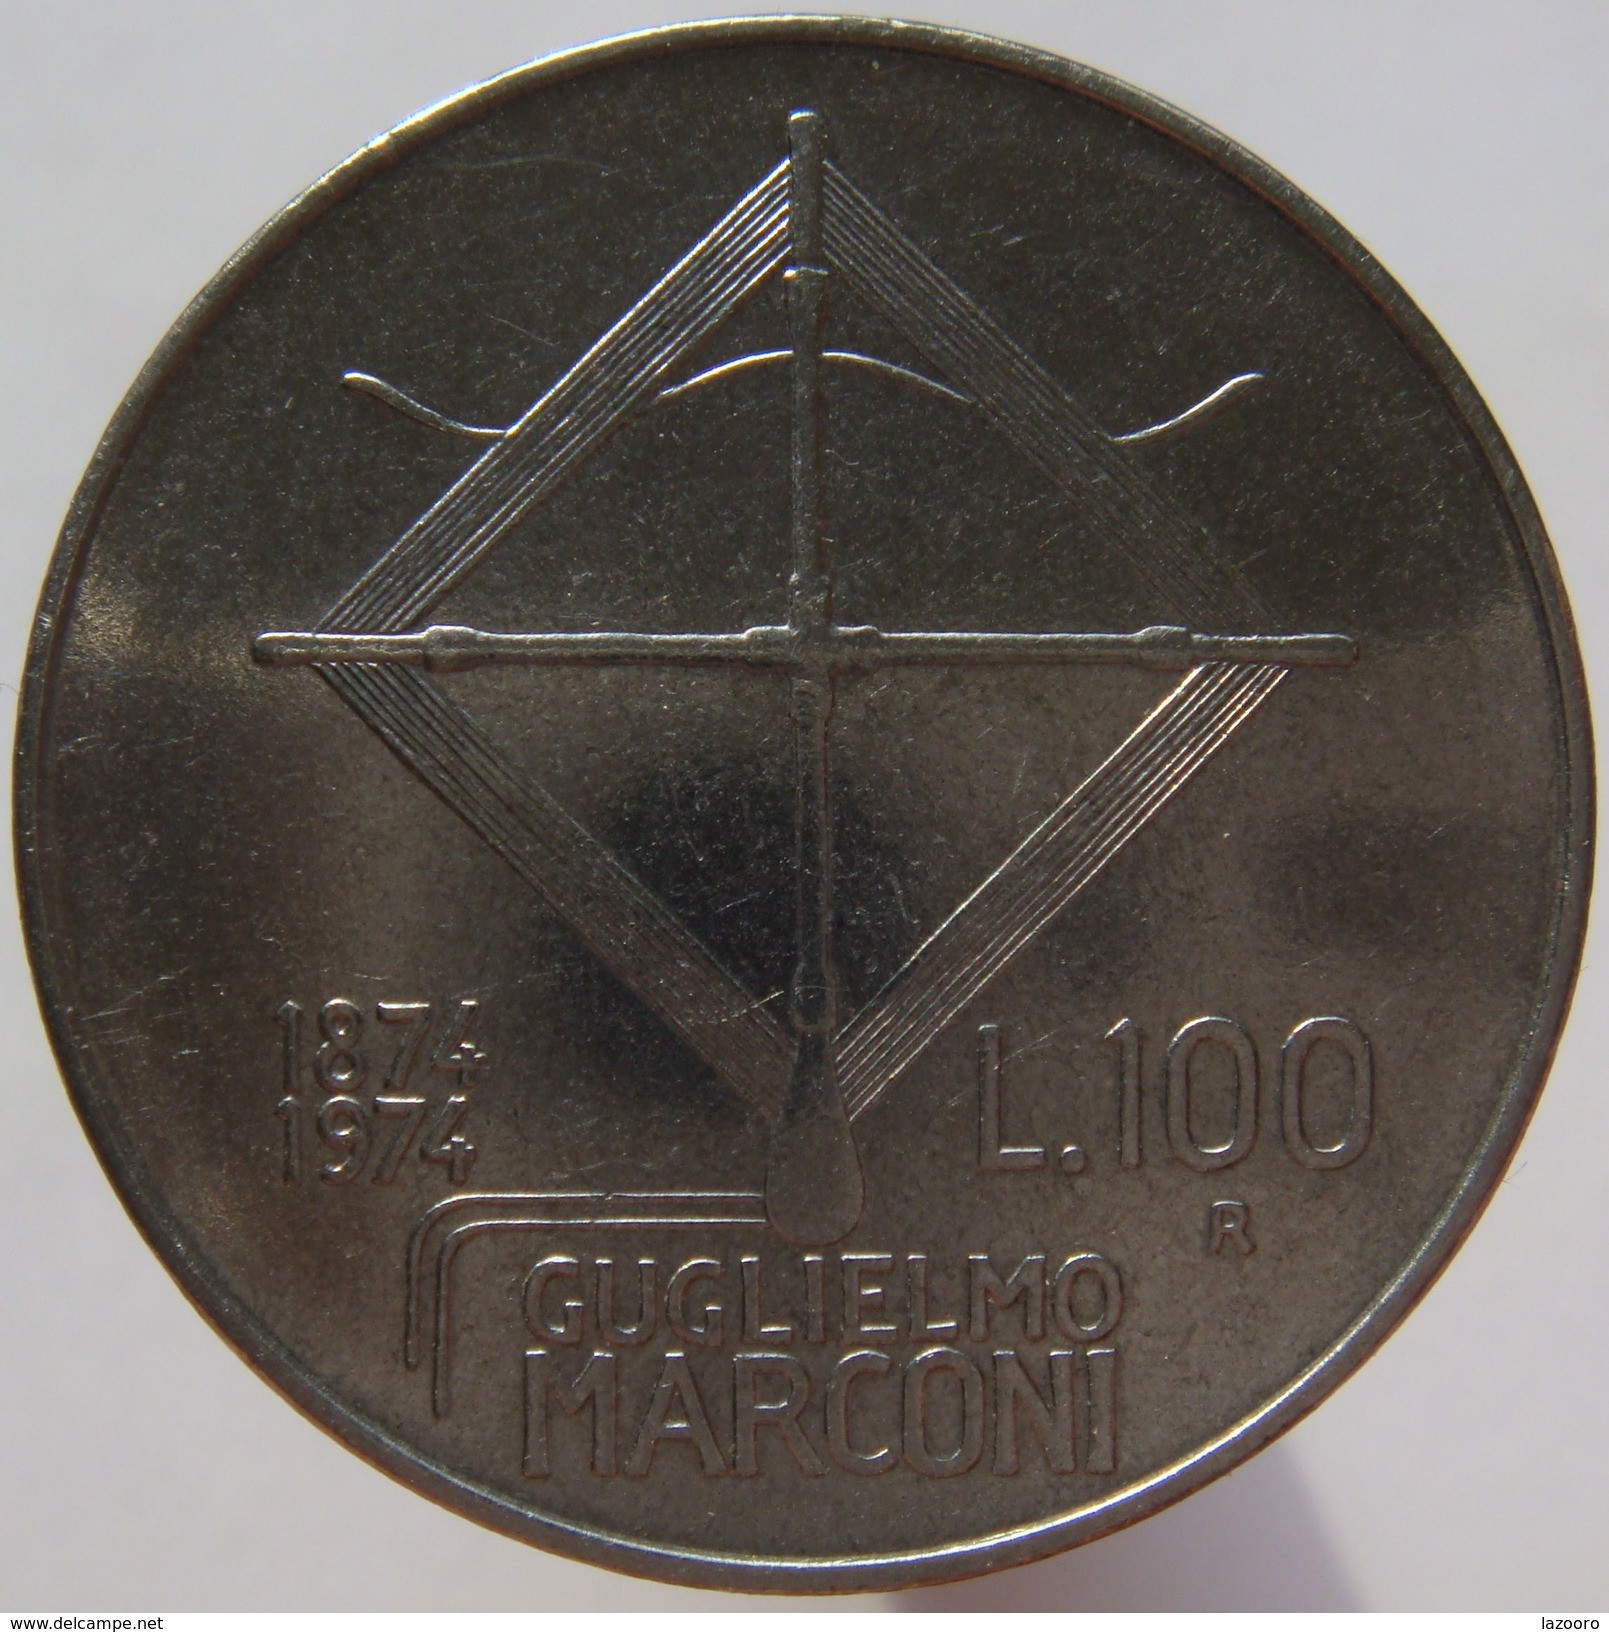 LaZooRo: Italy 100 Lire 1974 Marconi UNC - Herdenking